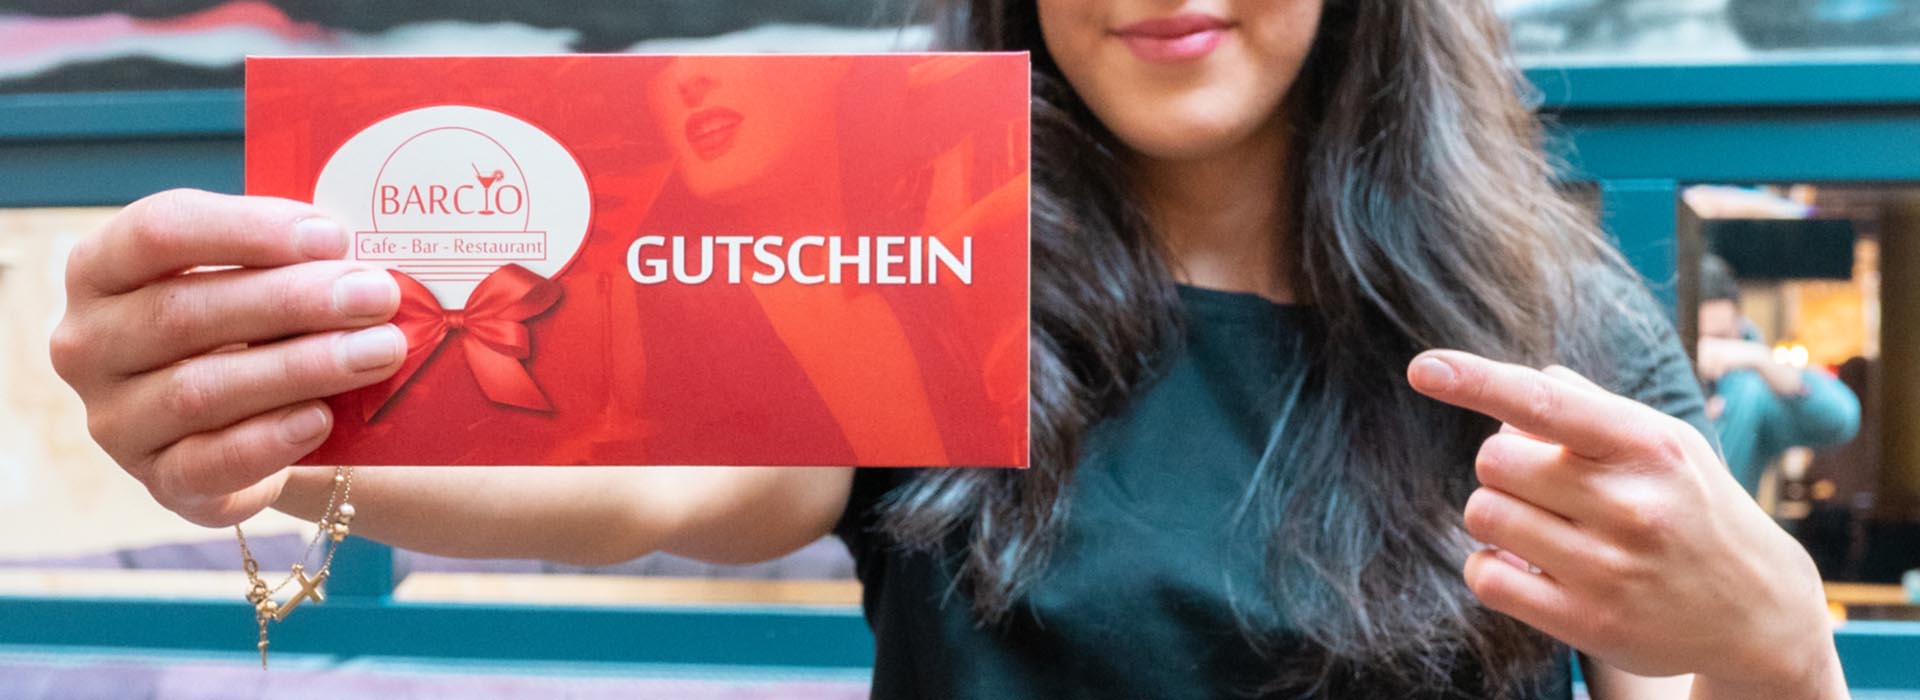 Café, Bar & Restaurant Gutschein | BARCIO Gutschein